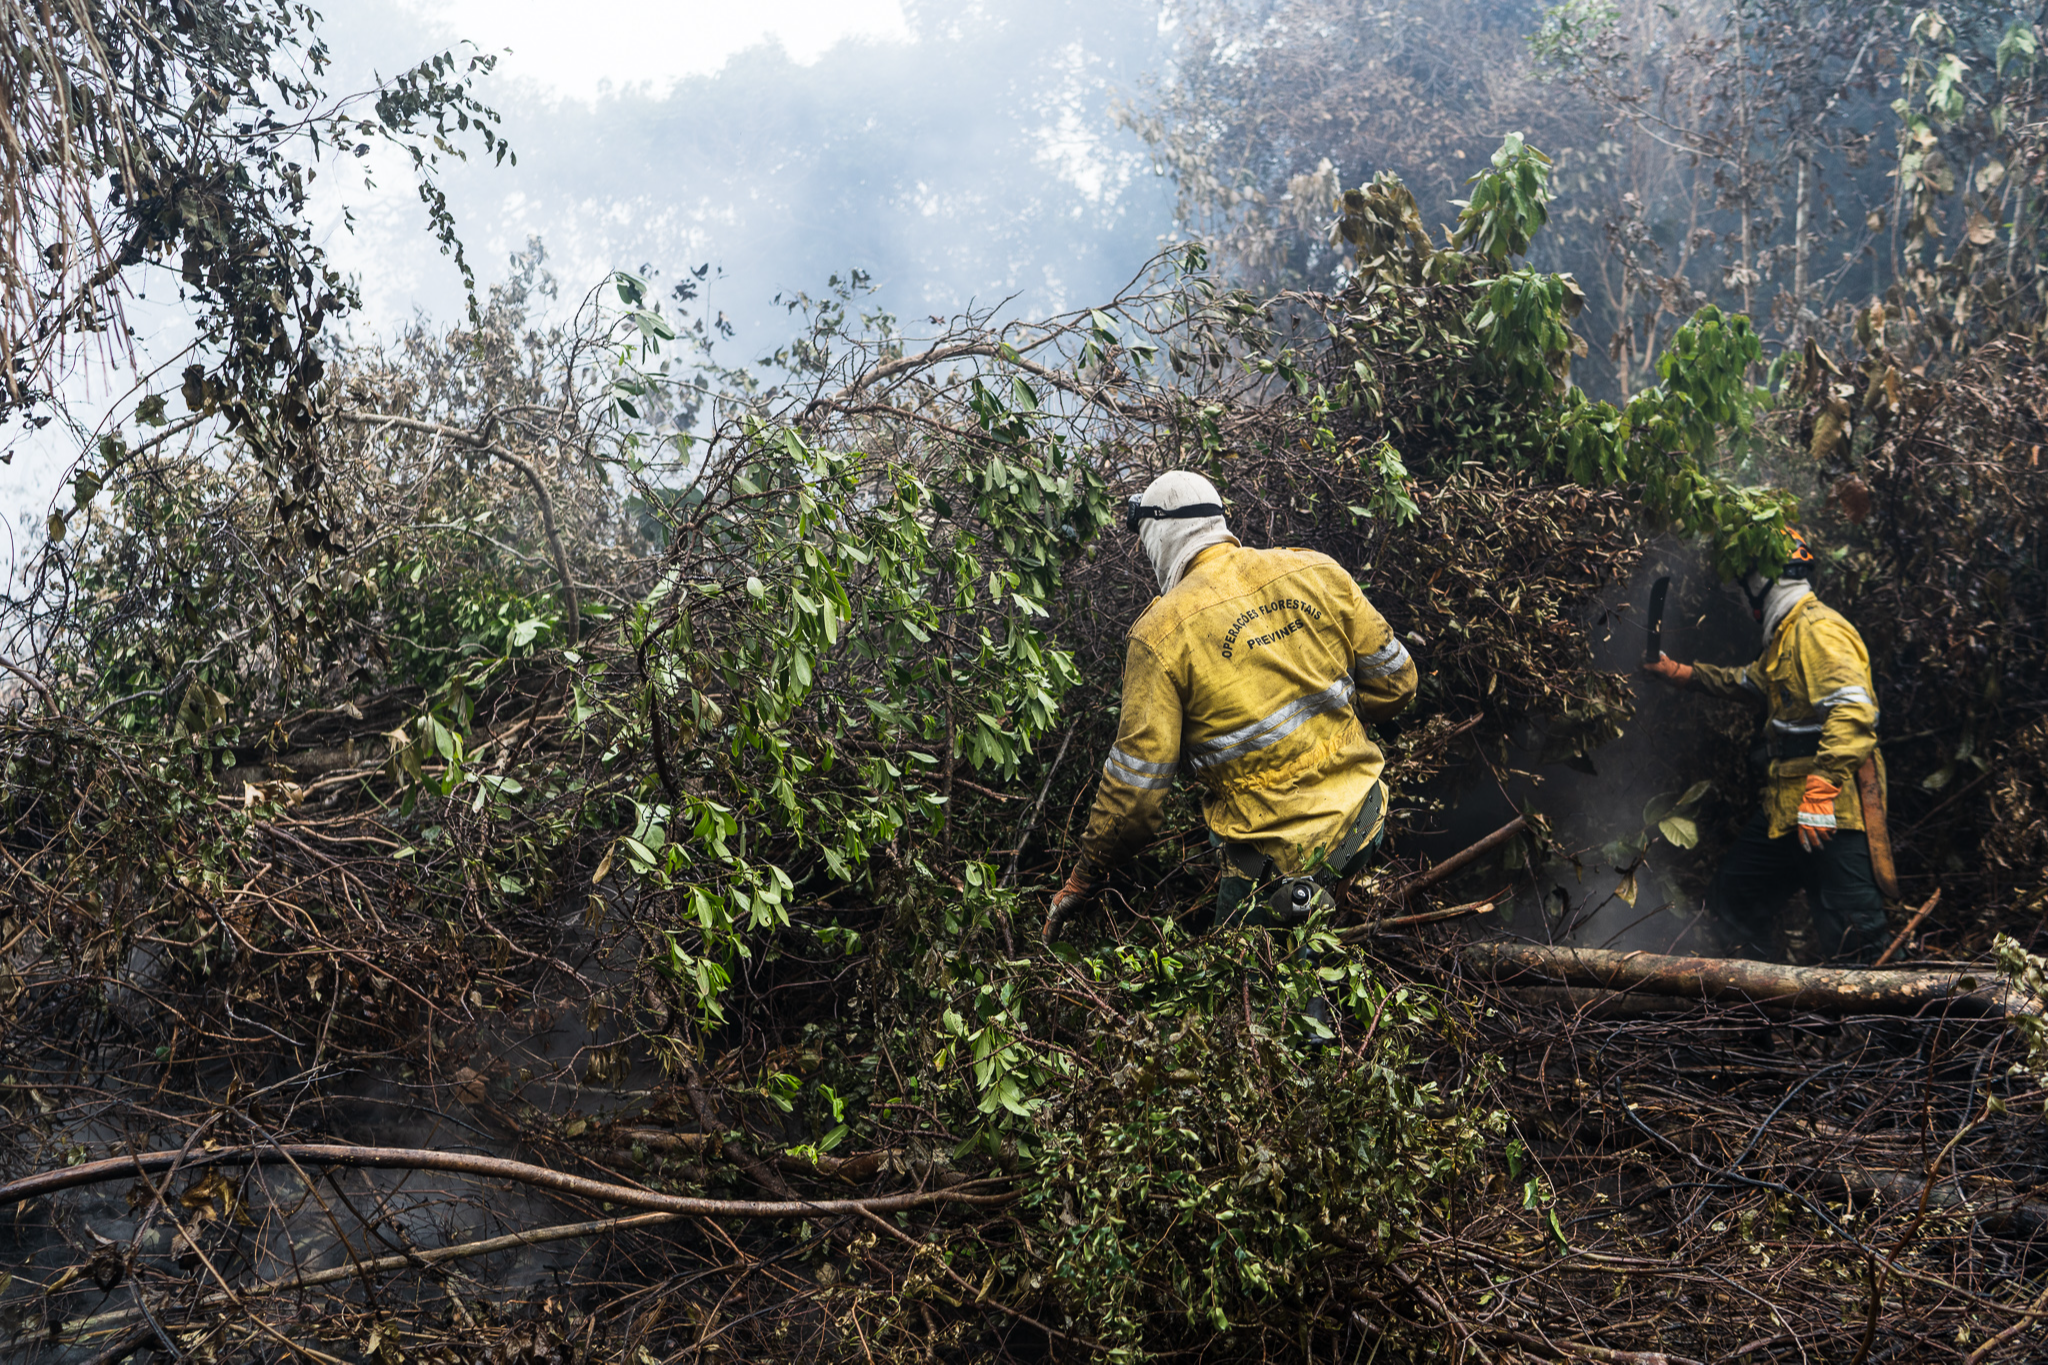 Equipes do Iema e também dos bombeiros trabalham diariamente no combate ao fogo desde o início do incêndio